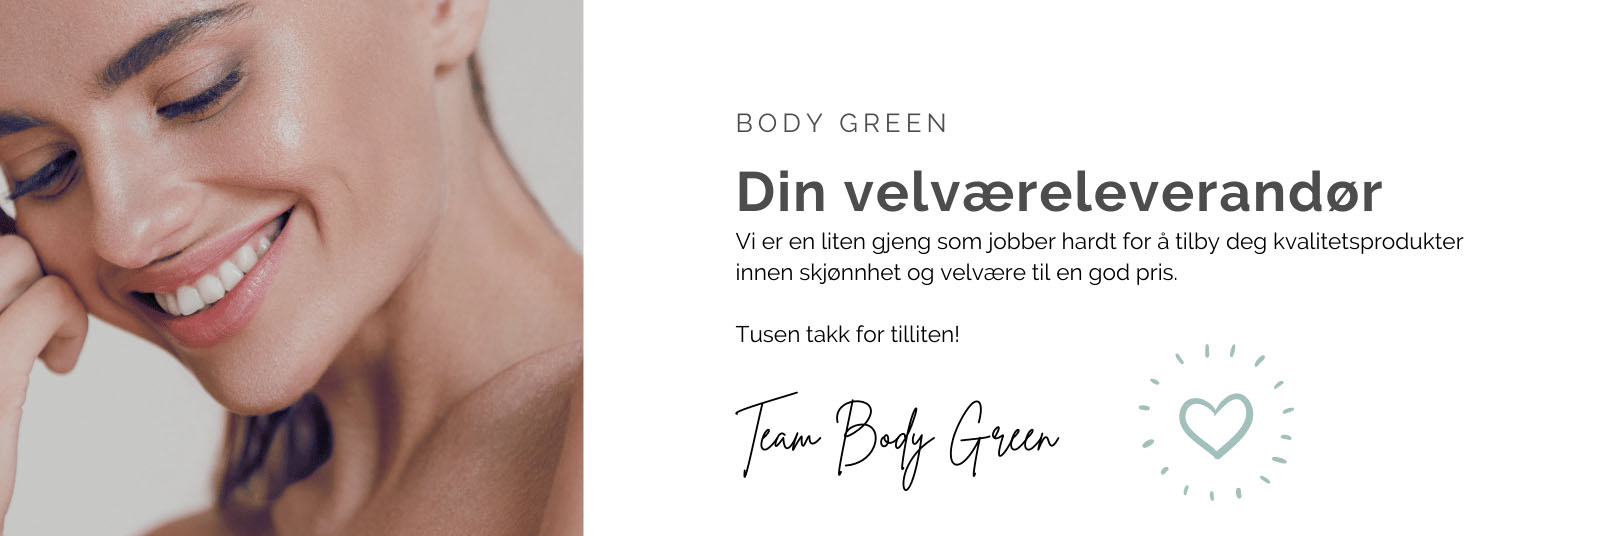 Om oss - Body Green